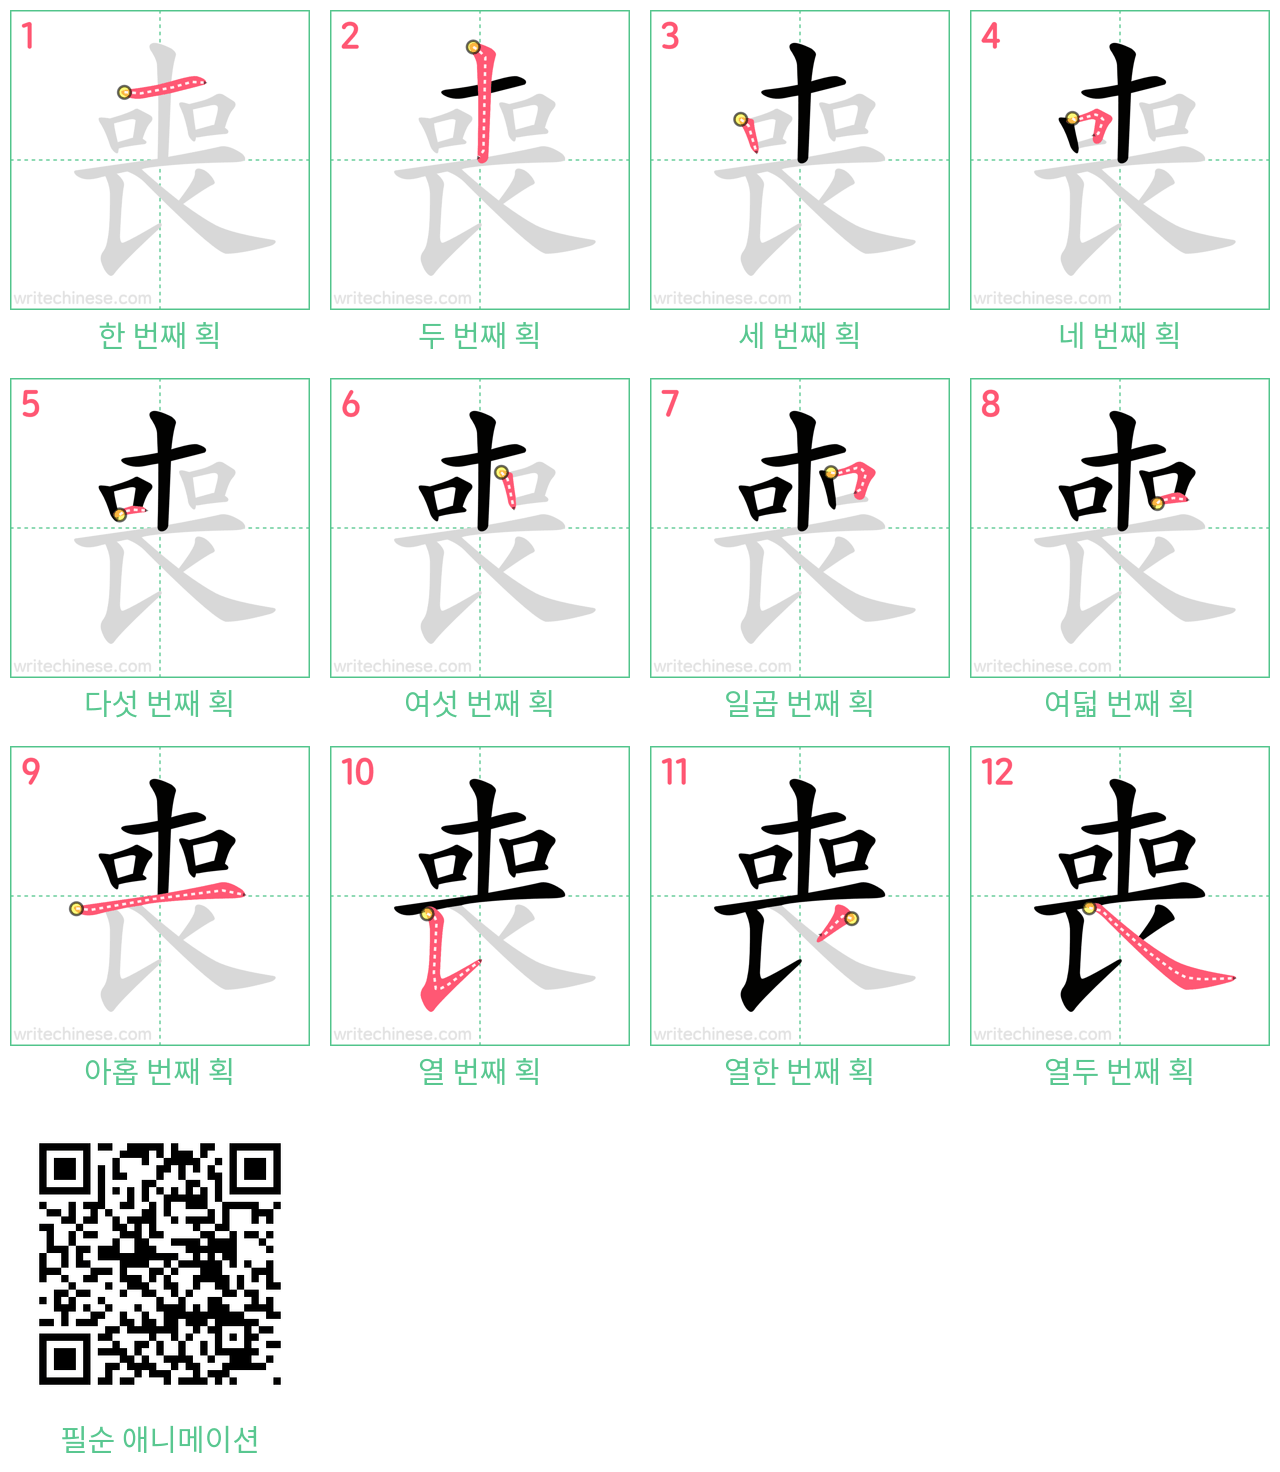 喪 step-by-step stroke order diagrams